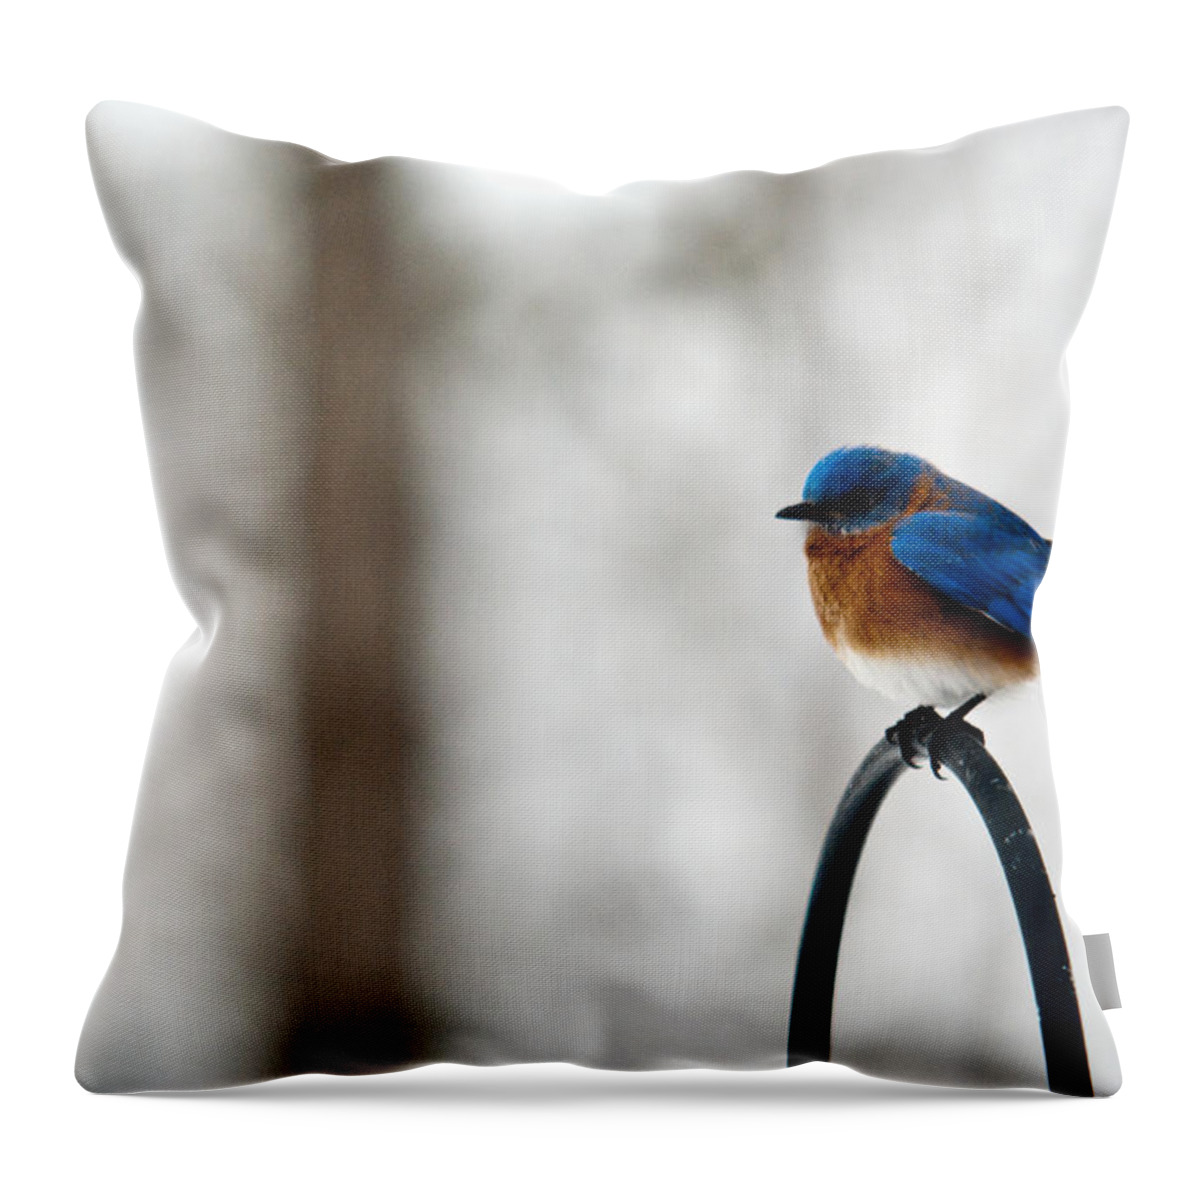 Bluebird Throw Pillow featuring the photograph Bluebird Fluffed by Douglas Barnett